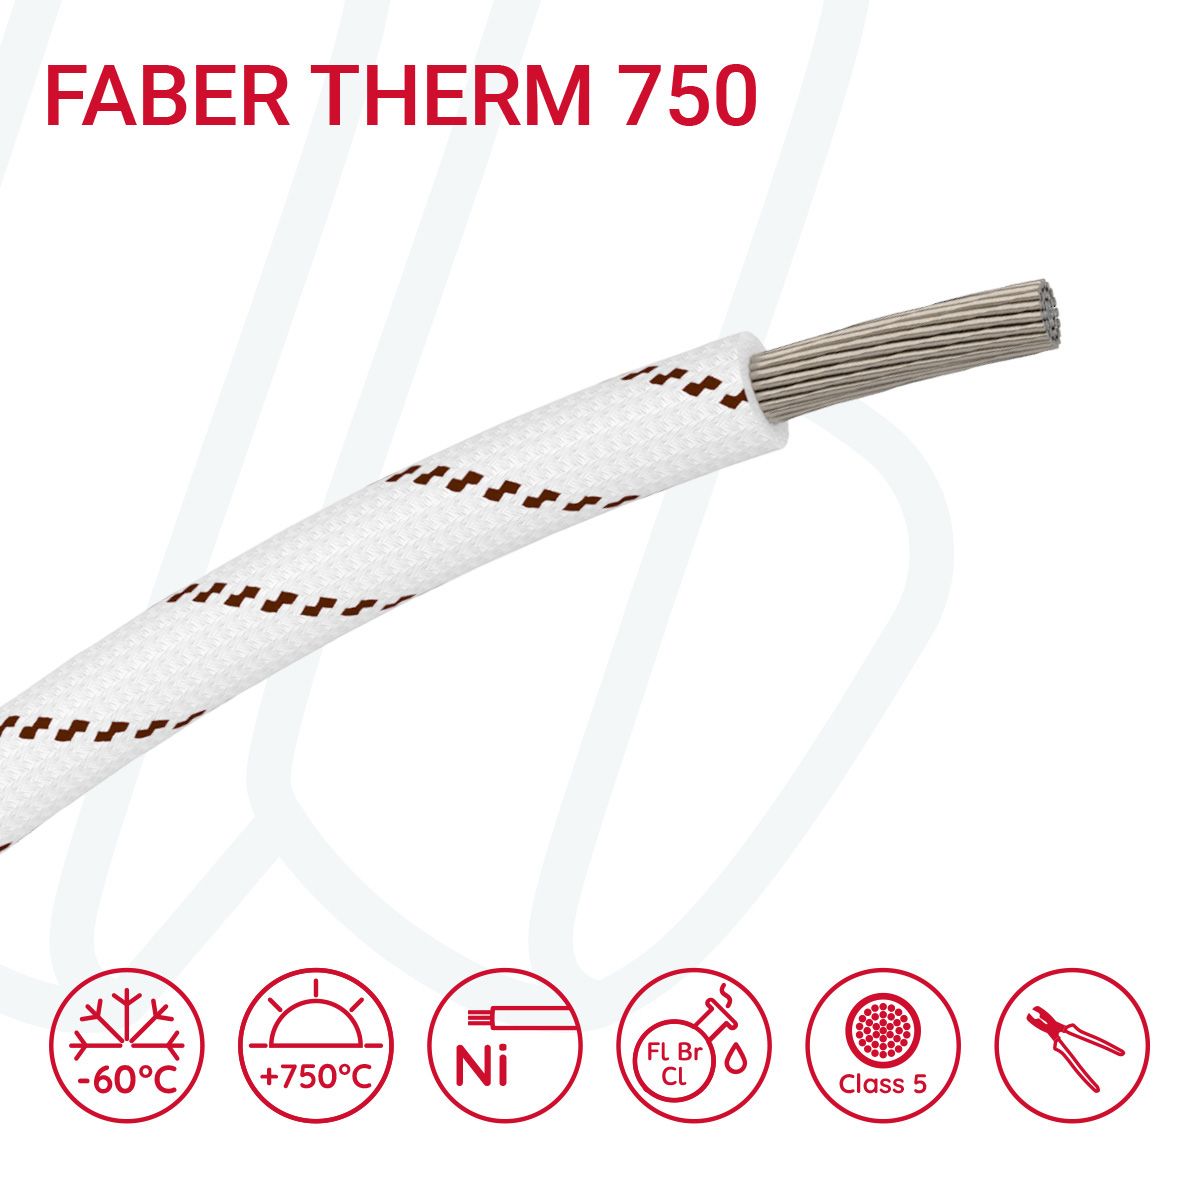 Провід термостійкий FABER THERM 750 01X6 в плетінні з коричневою ниткою, 01, 6